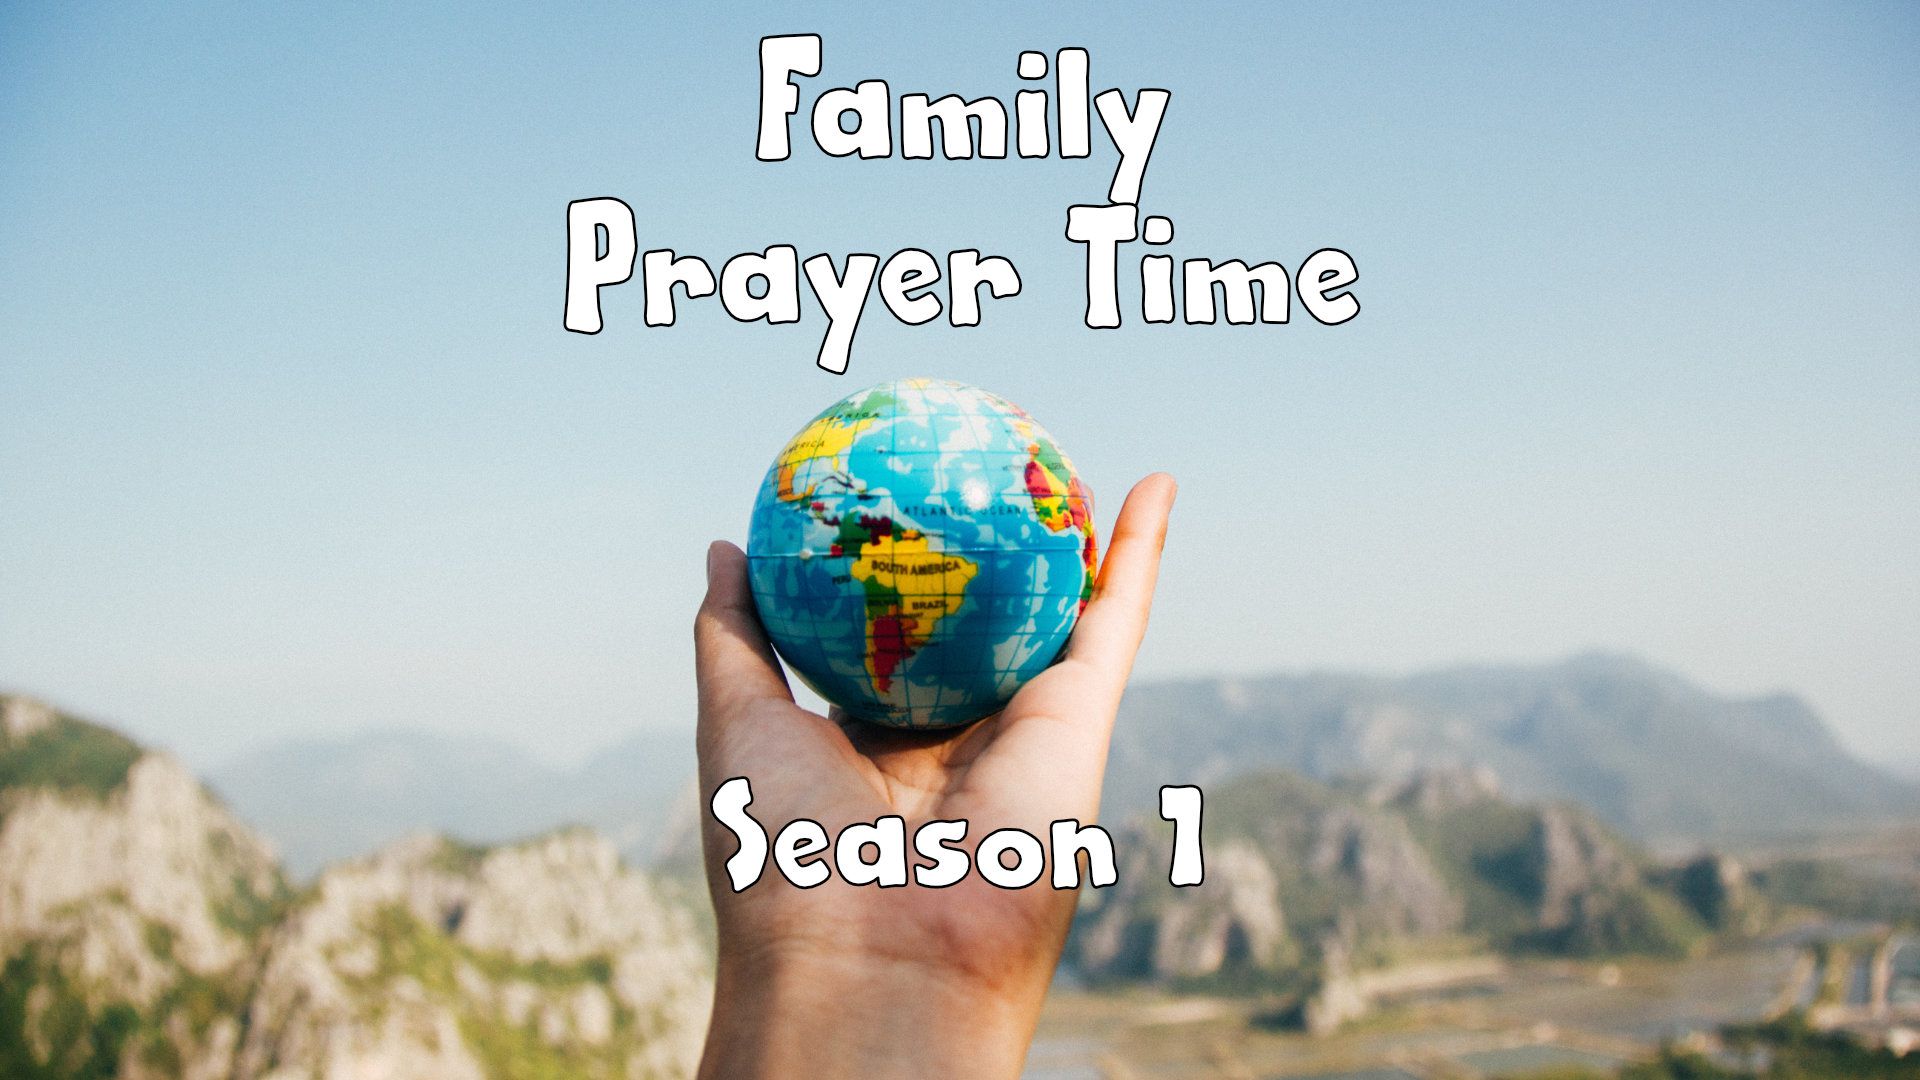 S1, Family Prayer Time